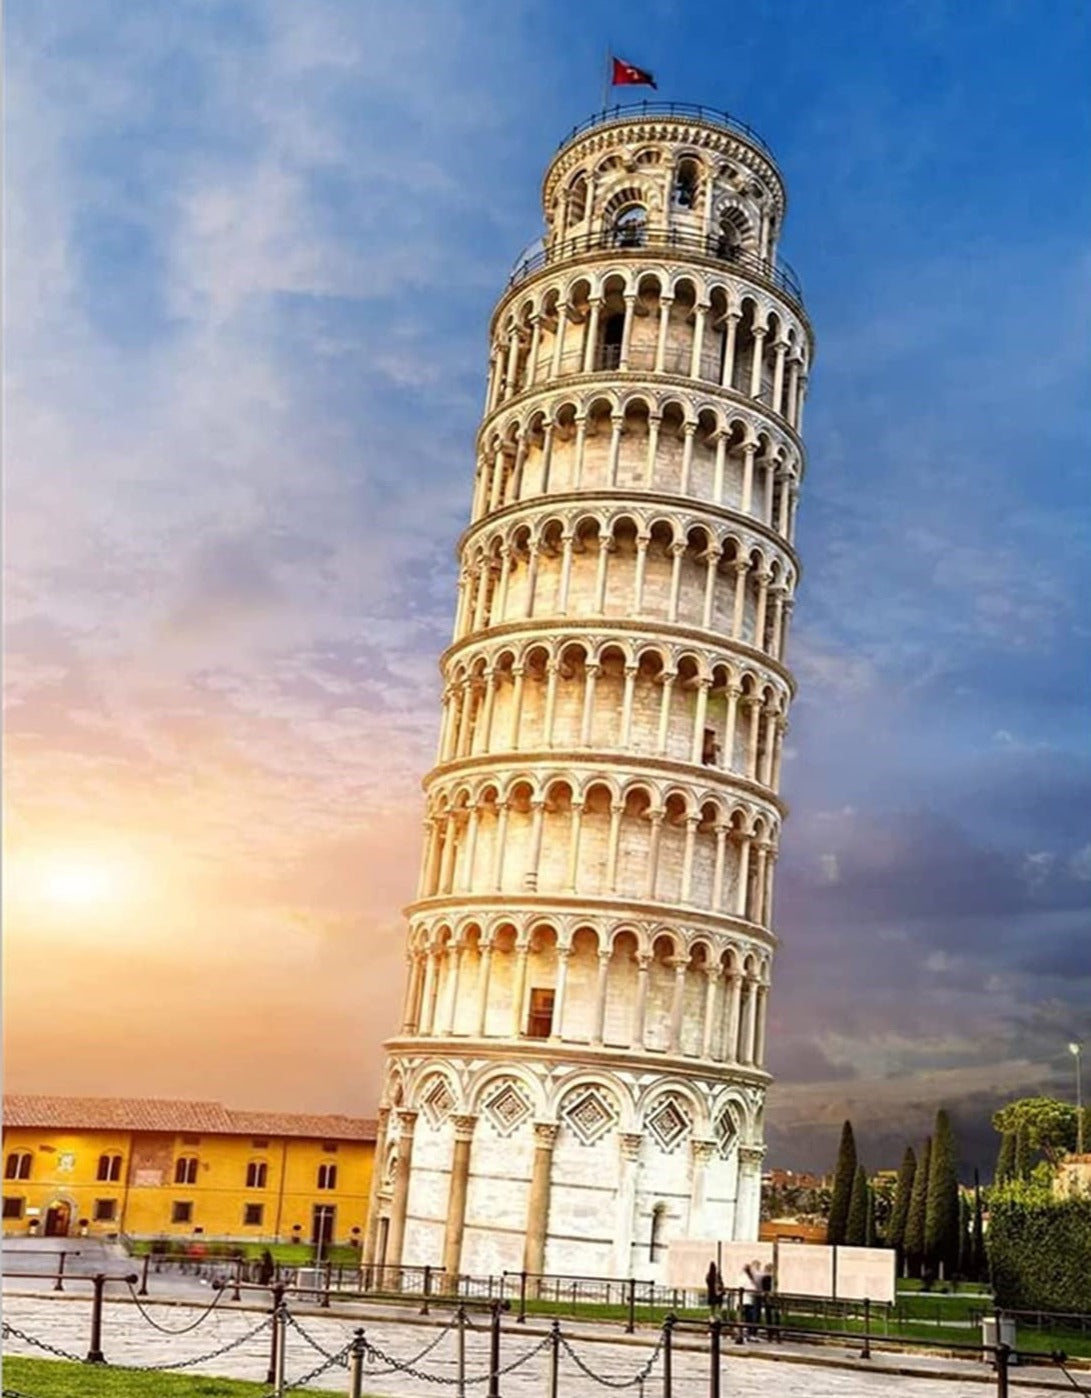 The Tower of Pisa Diamond Painting Kit